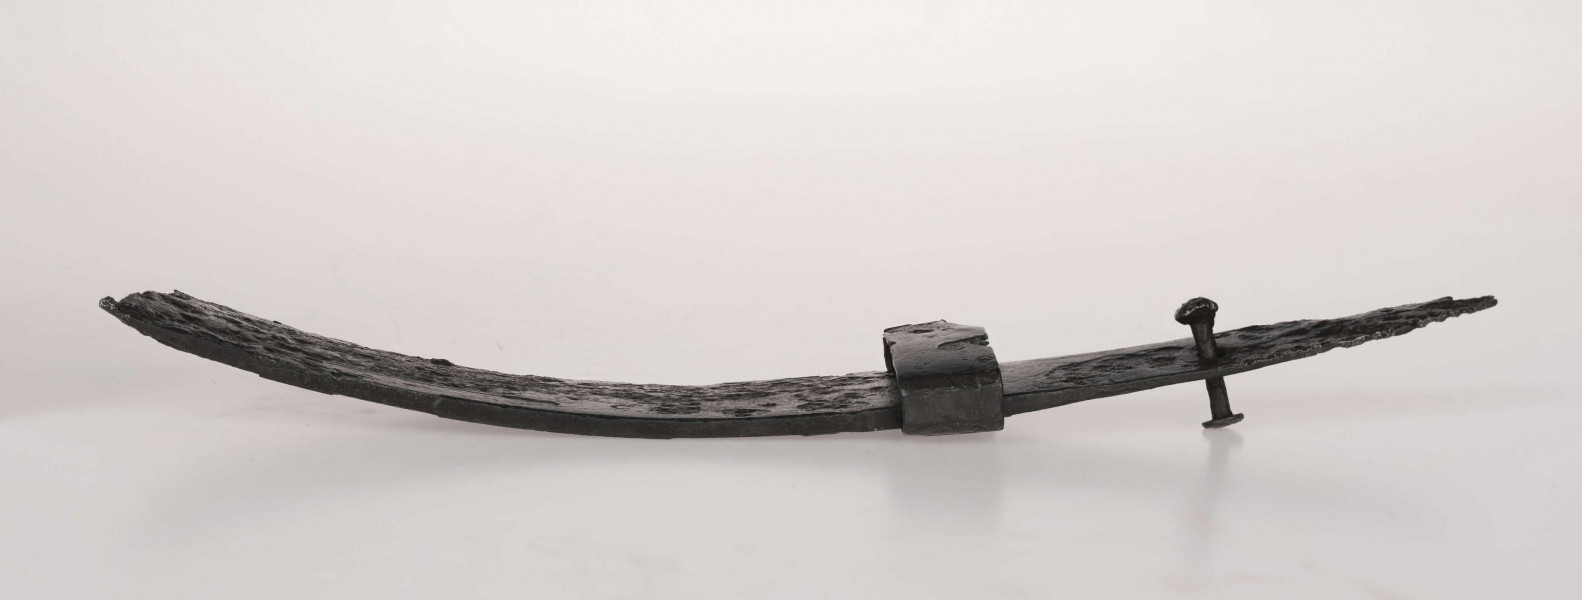 Miecz żelazny, jednosieczny, rytualnie zgięty. W górnej części głowni zdobienie ornamentem geometrycznym, typ D/2 wg Biborskiego.